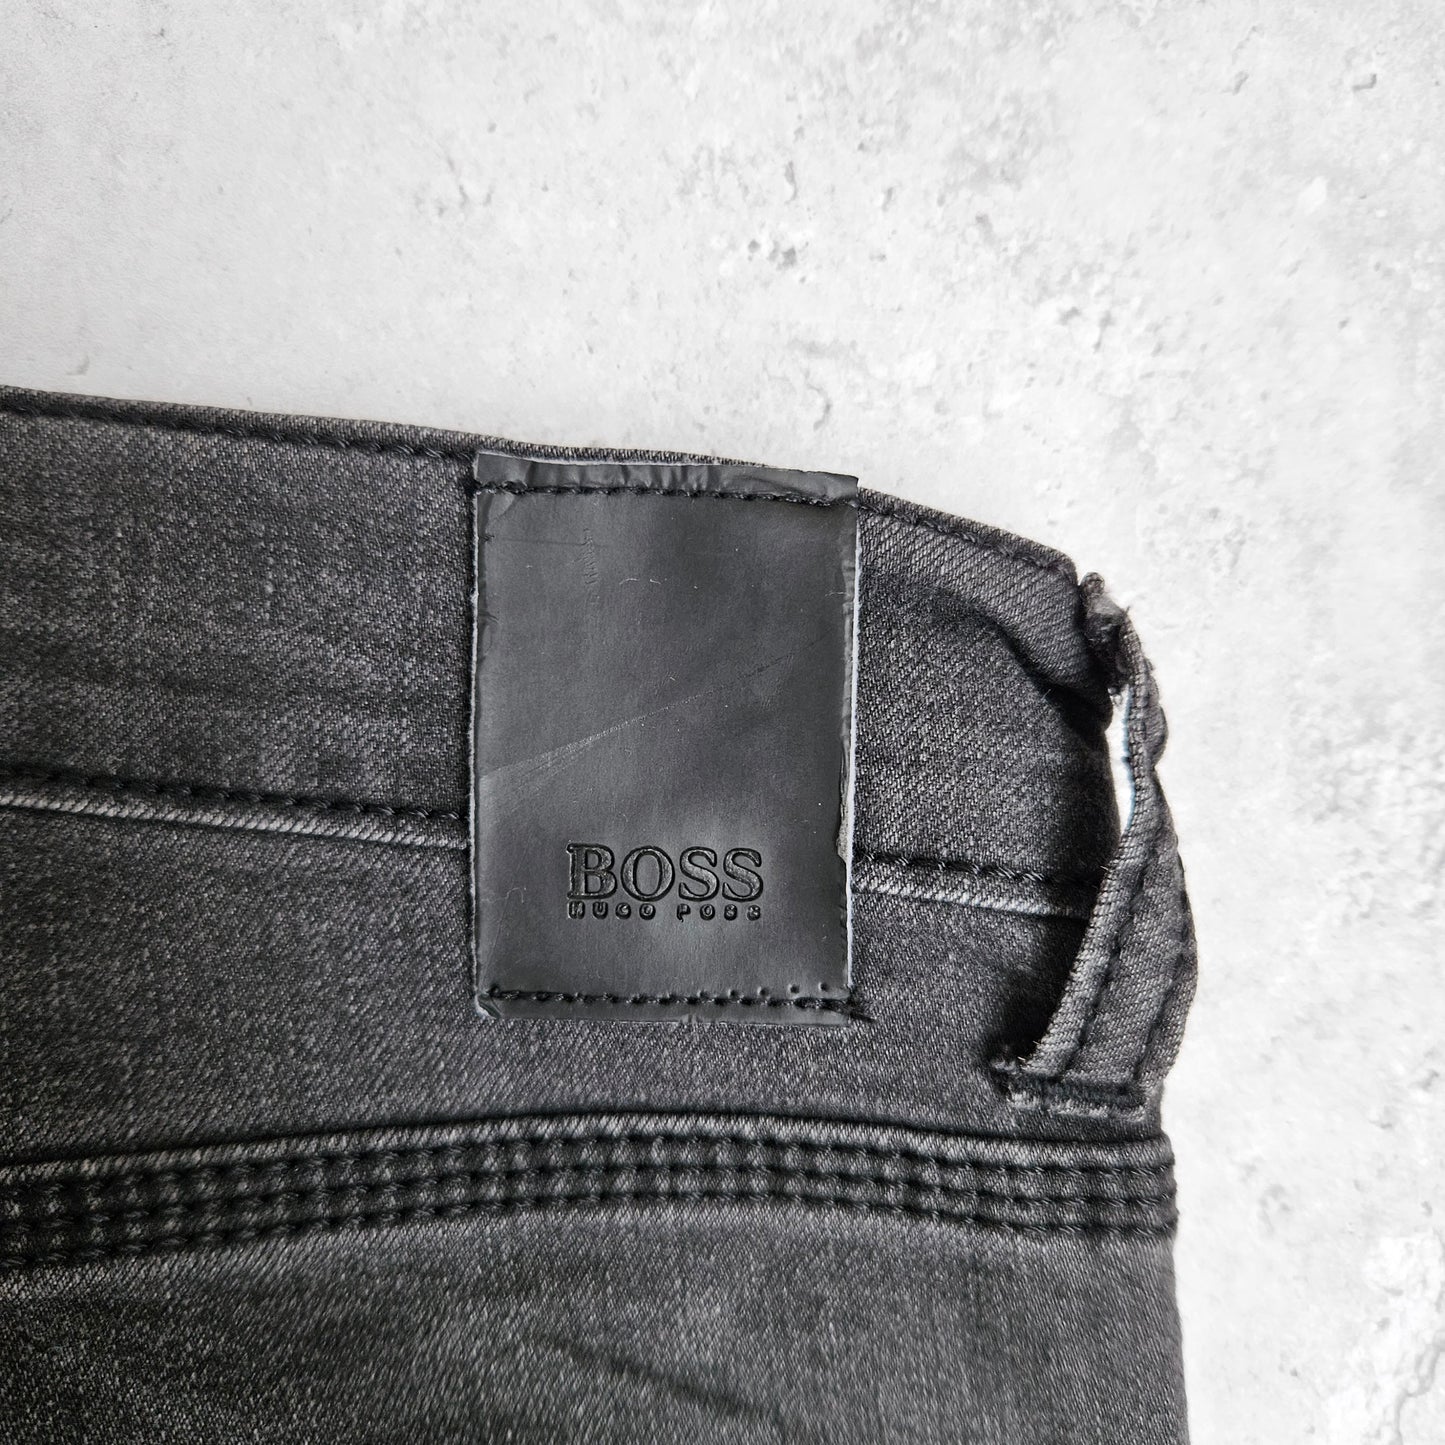 Hugo Boss Denim Jeans (31)